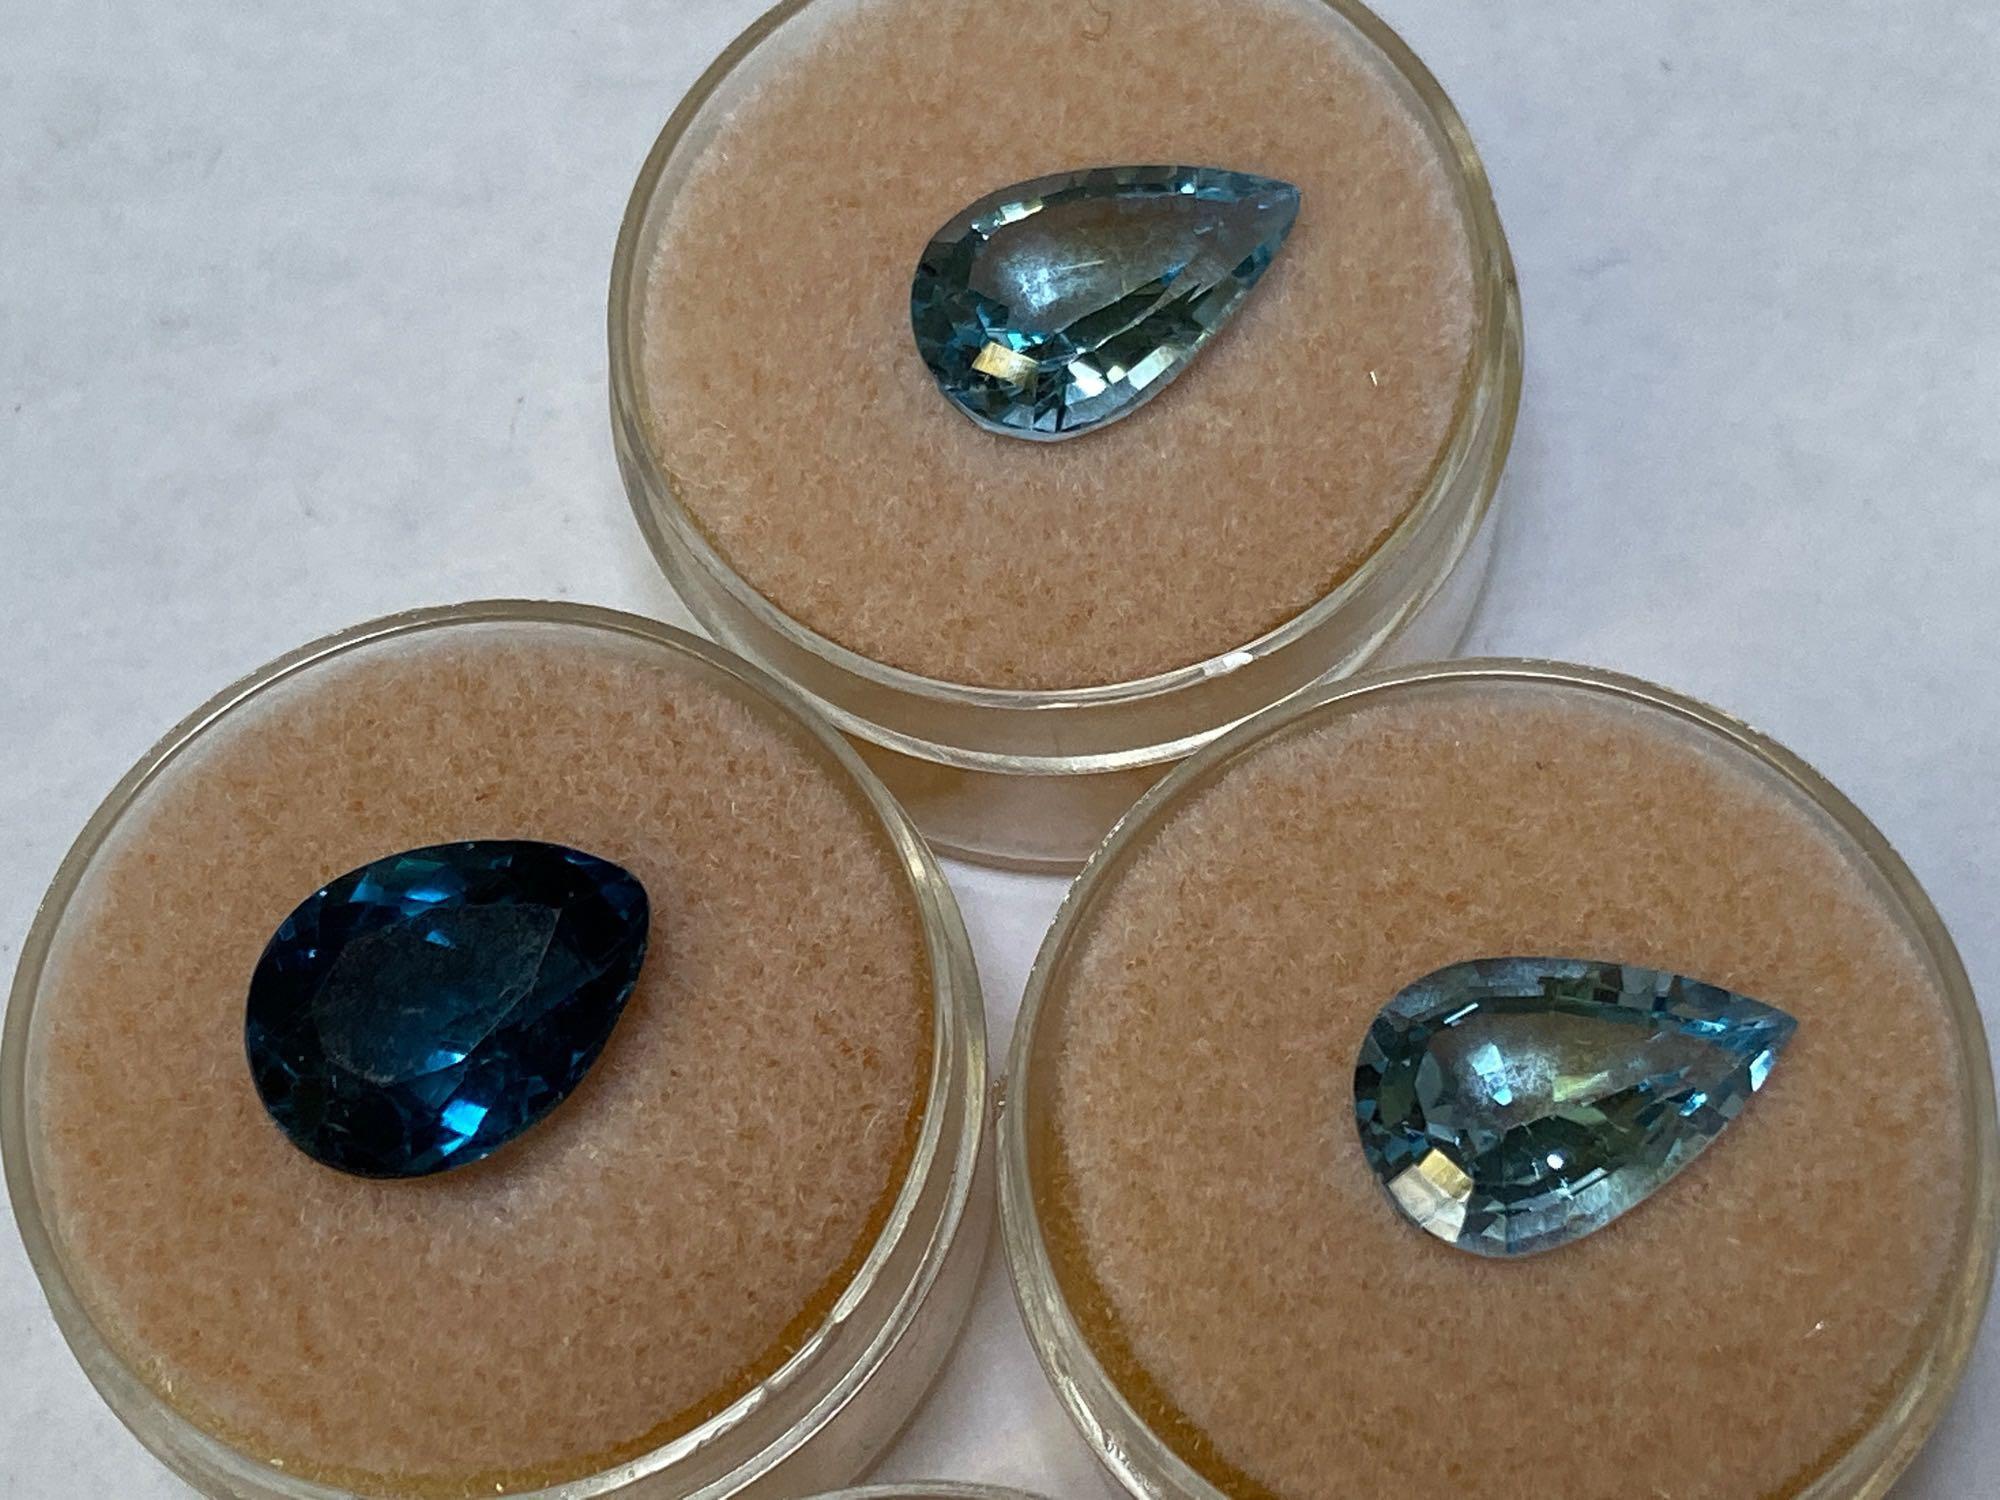 Gems & Jewels, says Blue Topaz